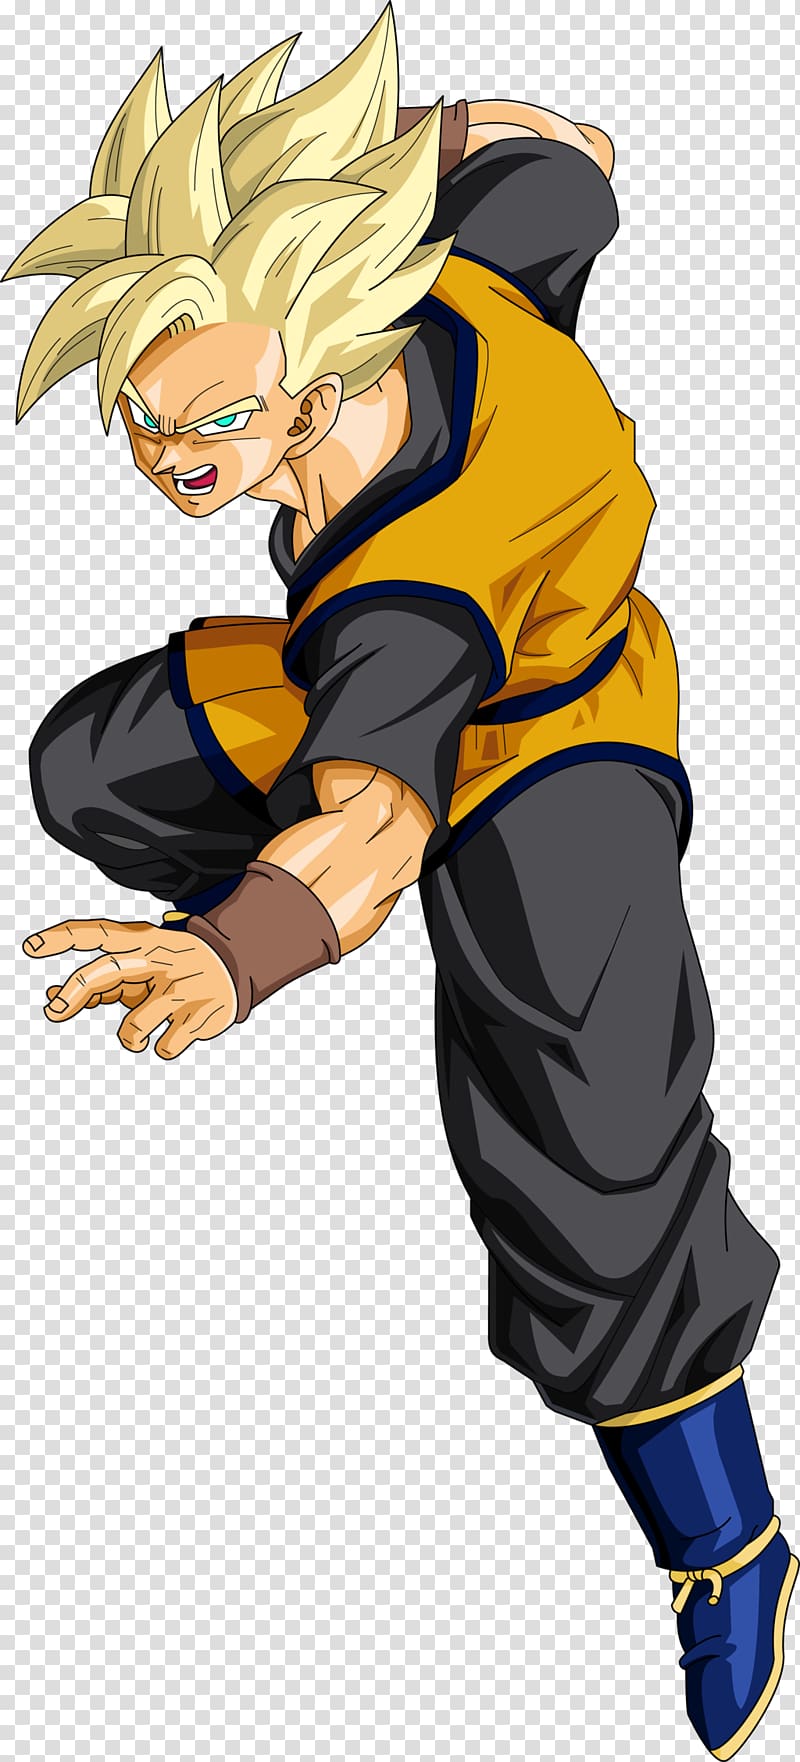 Goku Vegeta Frieza Trunks Dragon Ball Z: Battle of Z, sheng yi xing long transparent background PNG clipart